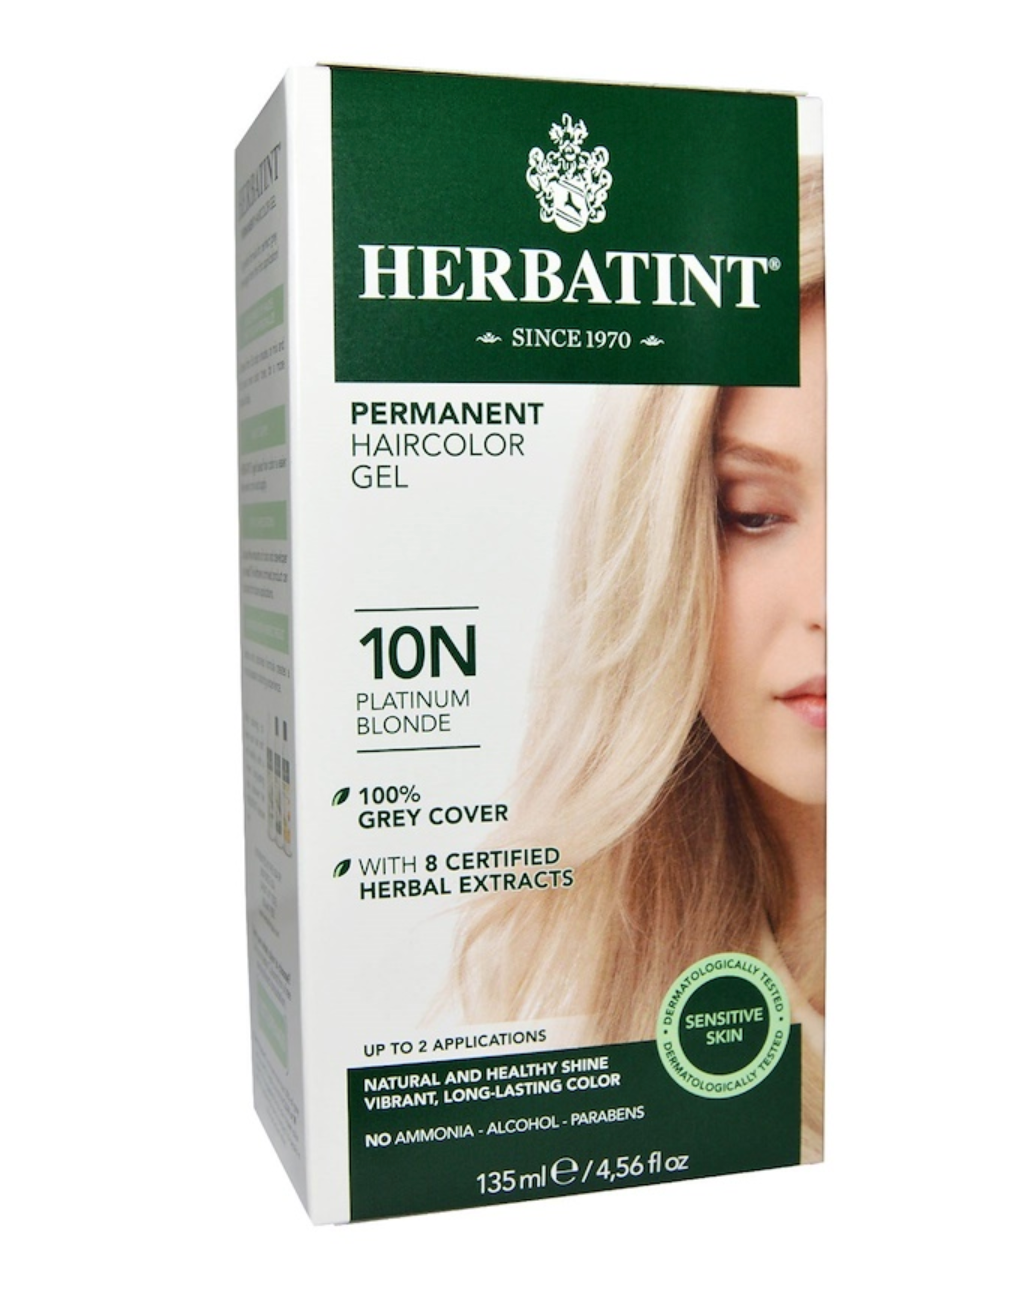 10N Platinum Blonde Hair Color Gel